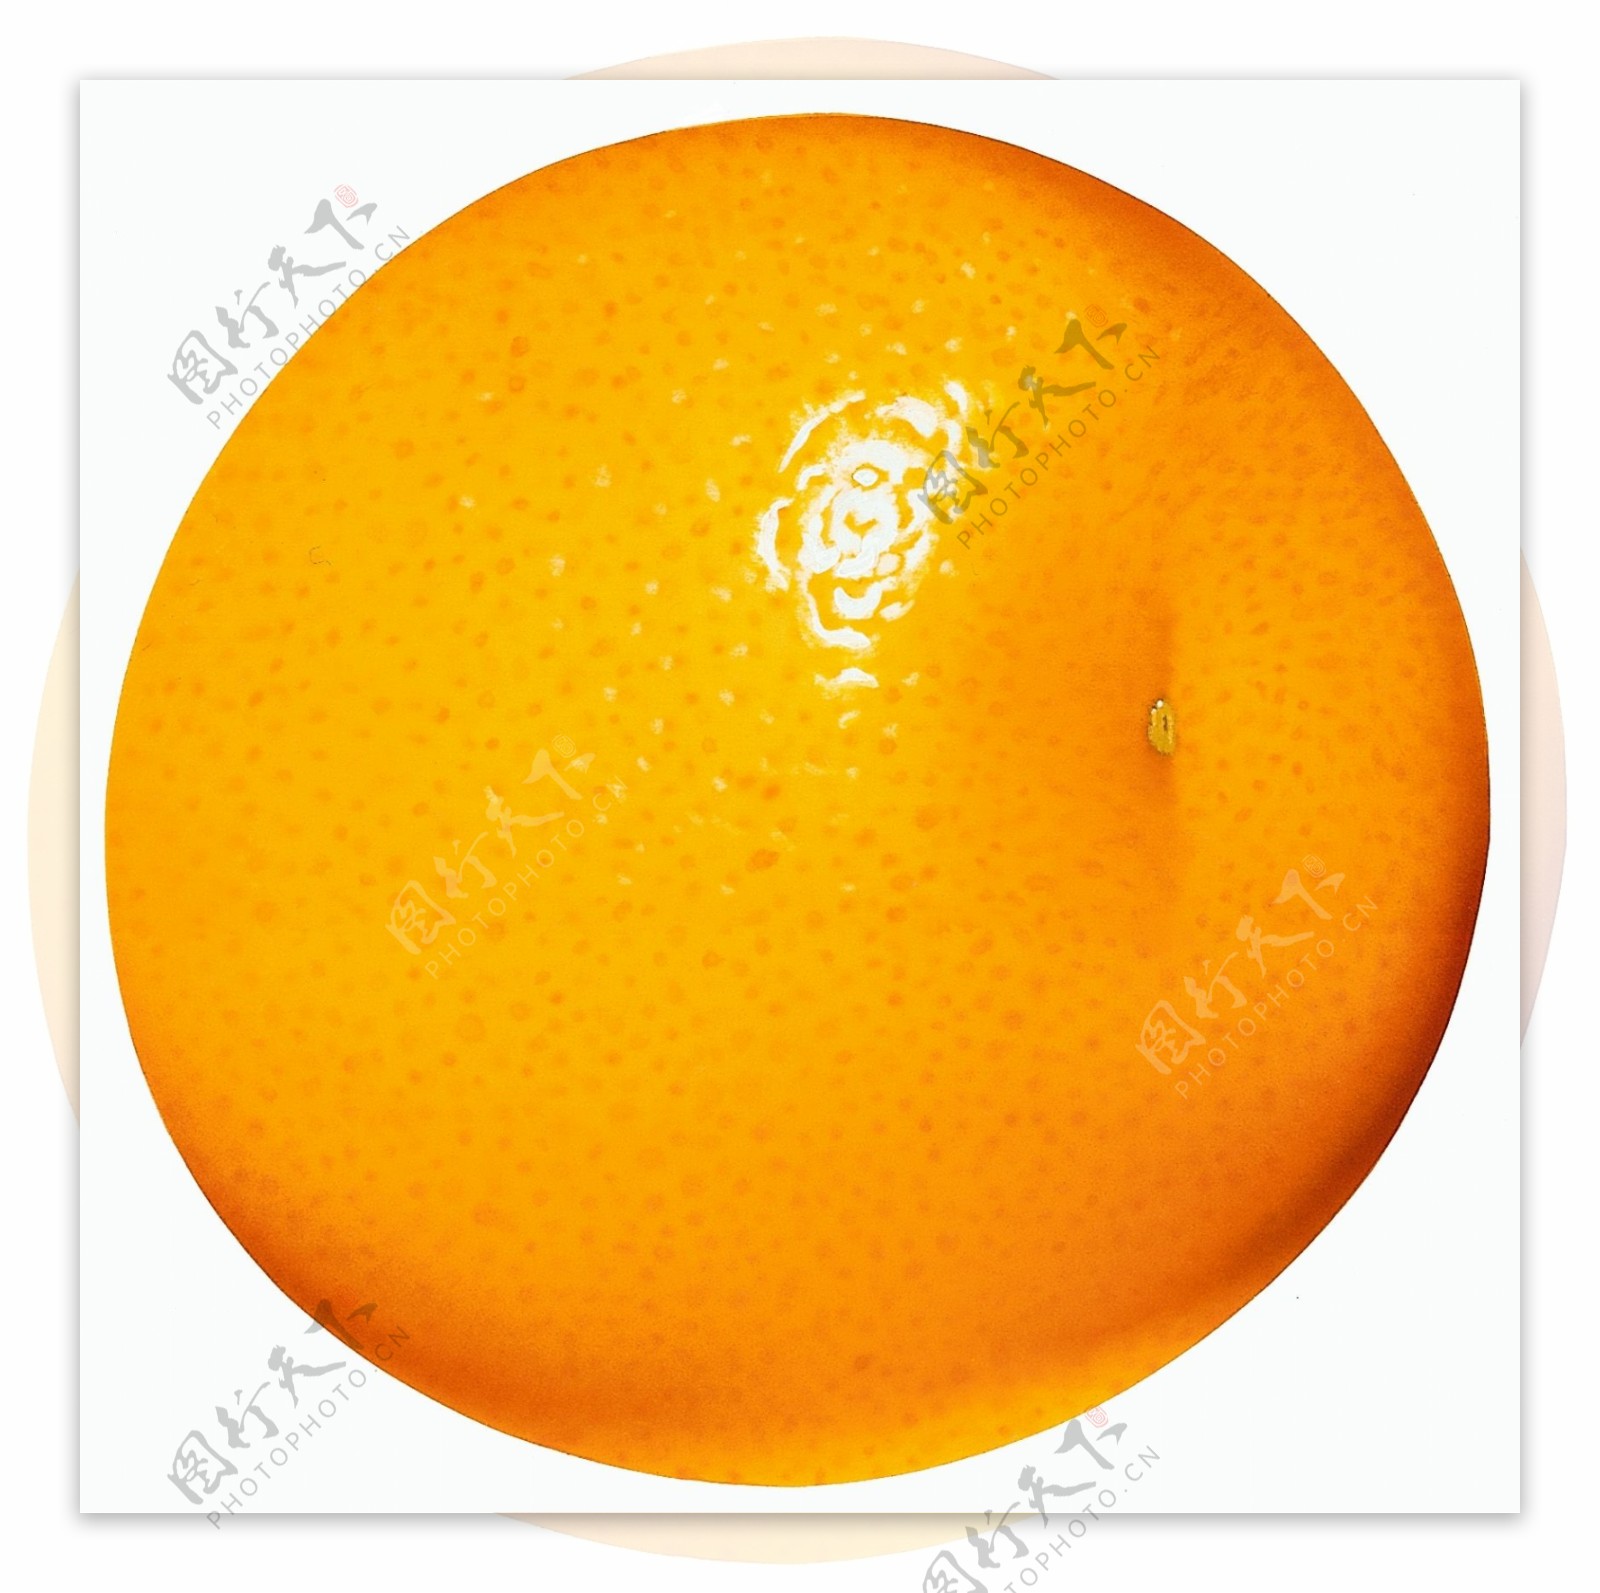 大个橘子橘子特写橘子图片橘子标本橘子素材